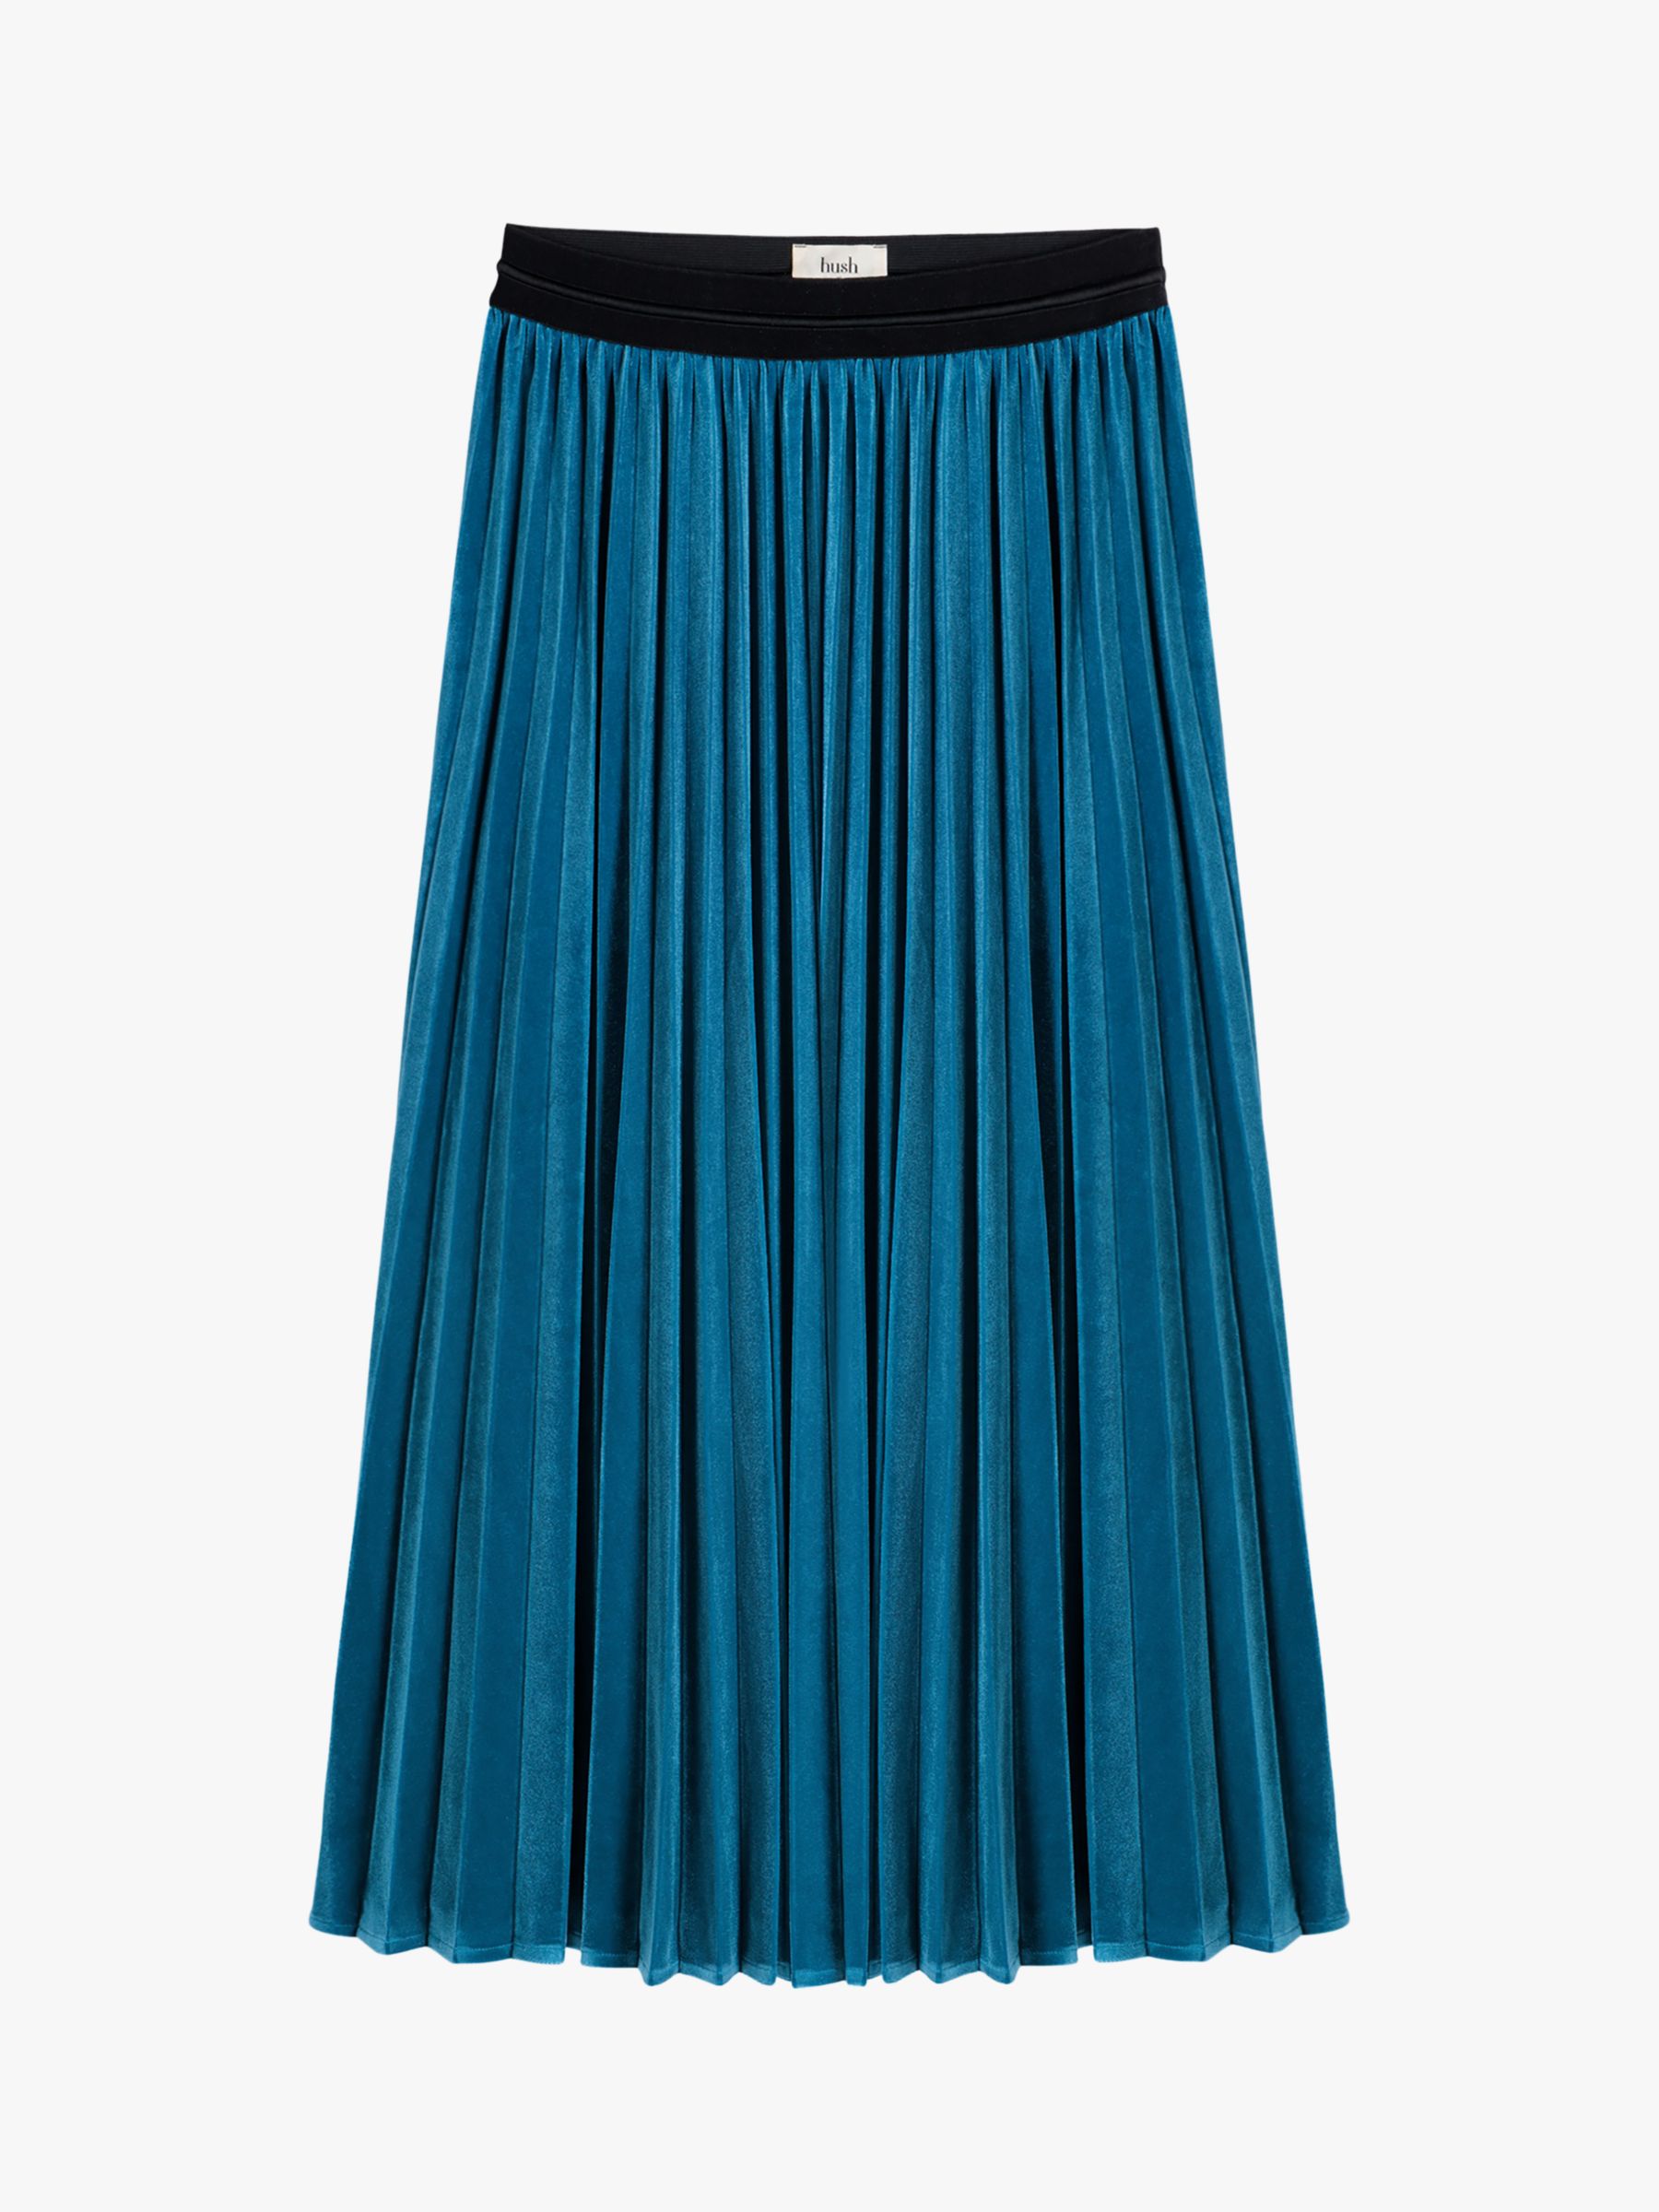 hush Thea Velour Maxi Skirt, Blue at John Lewis & Partners